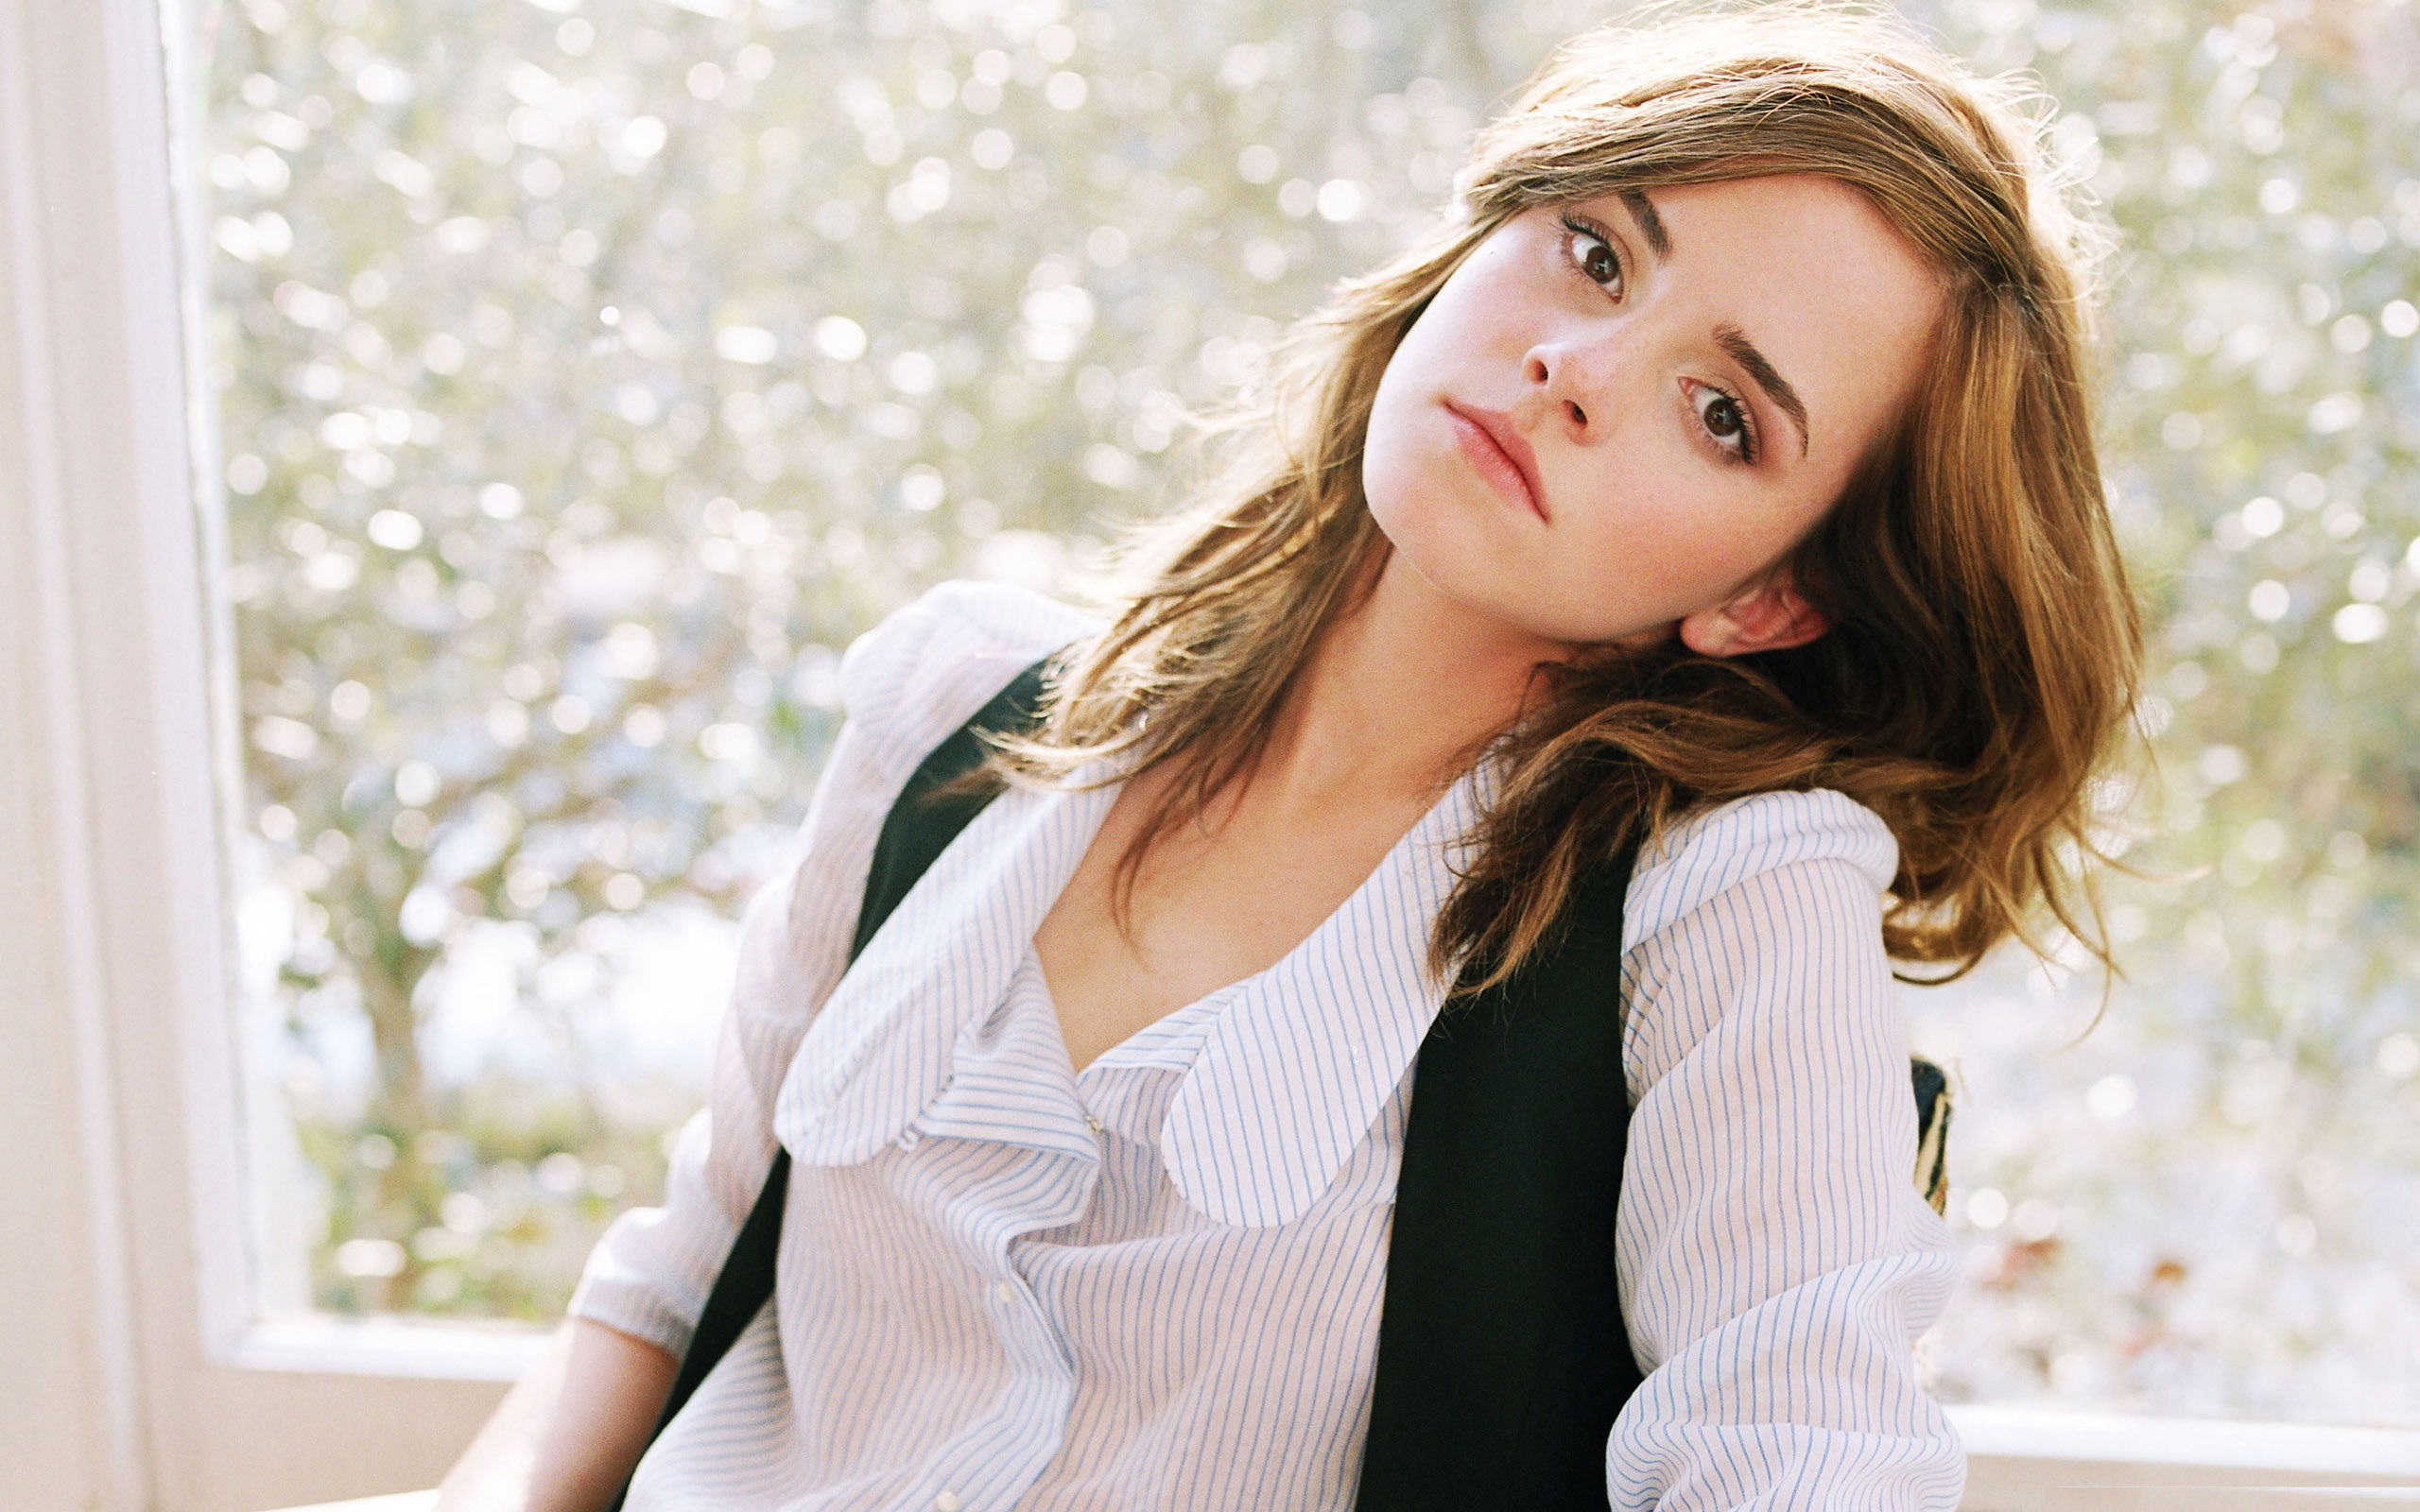 Beautiful Emma Watson Photoshoot Wallpapers